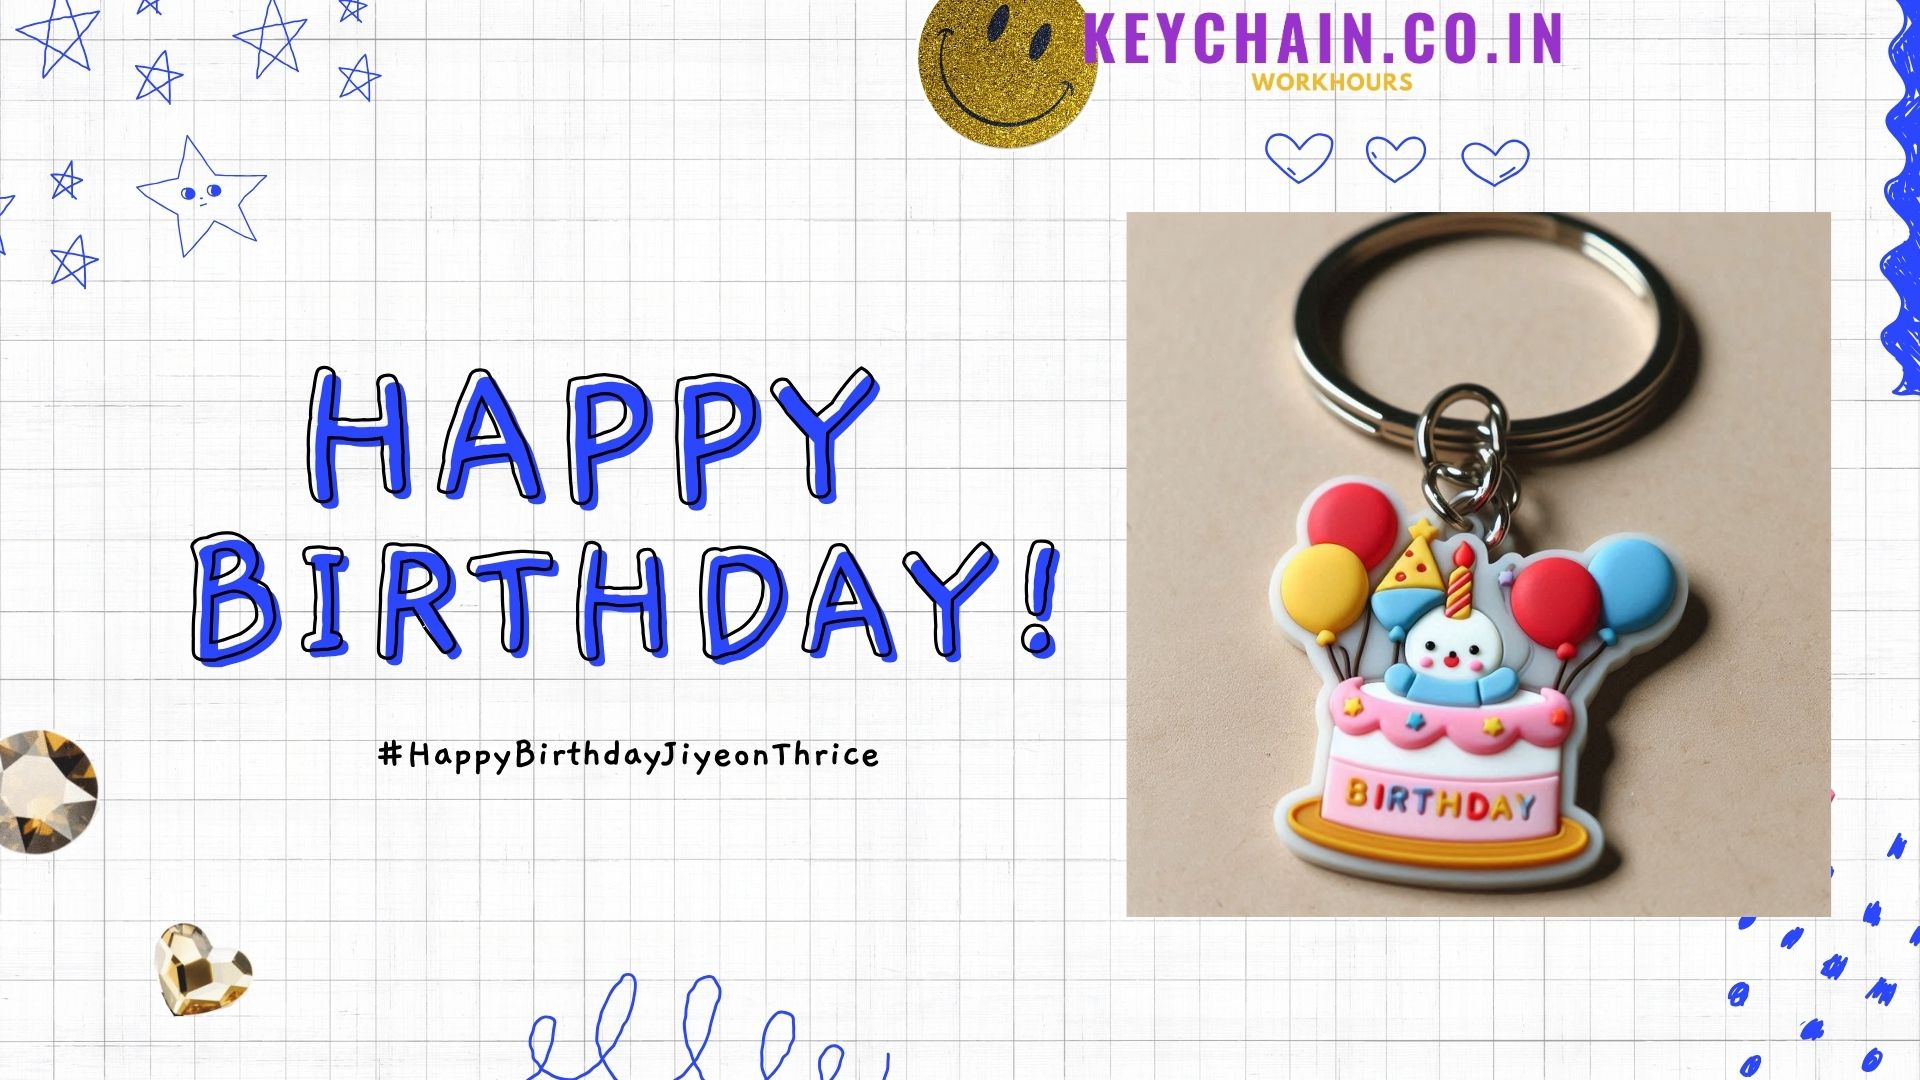 birthday gift, birthday celebration, birthday occasion, keychain.co.in